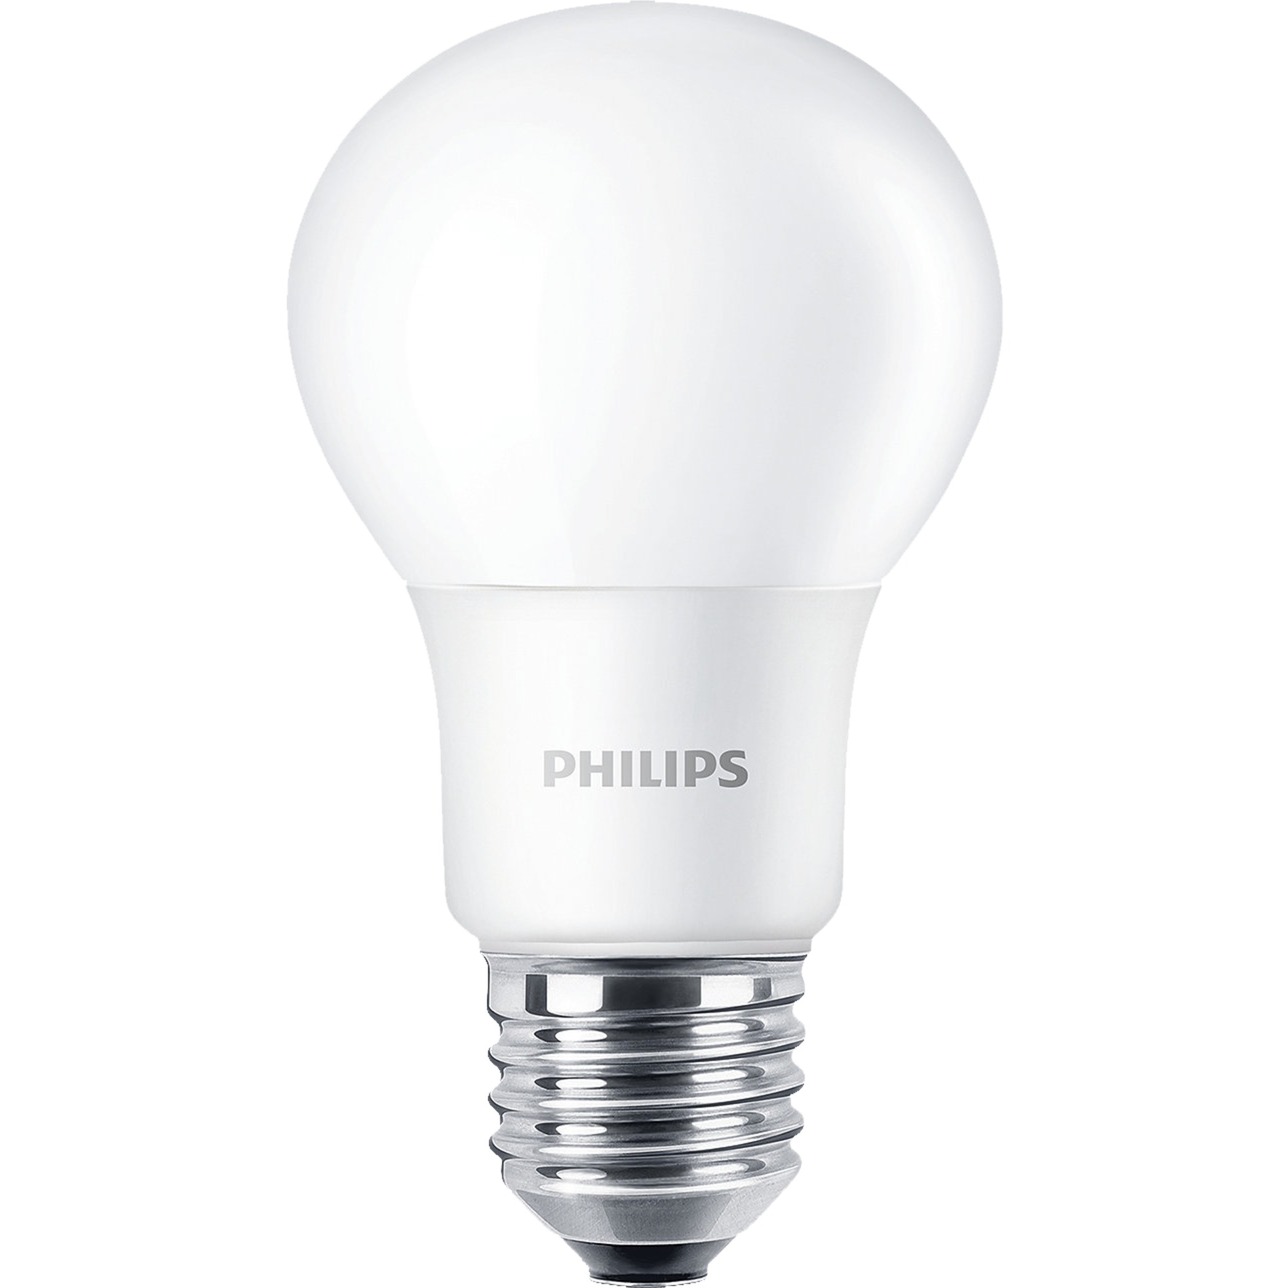 Image of Alternate - CorePro LEDbulb ND 7,5-60W A60 E27 840, LED-Lampe online einkaufen bei Alternate